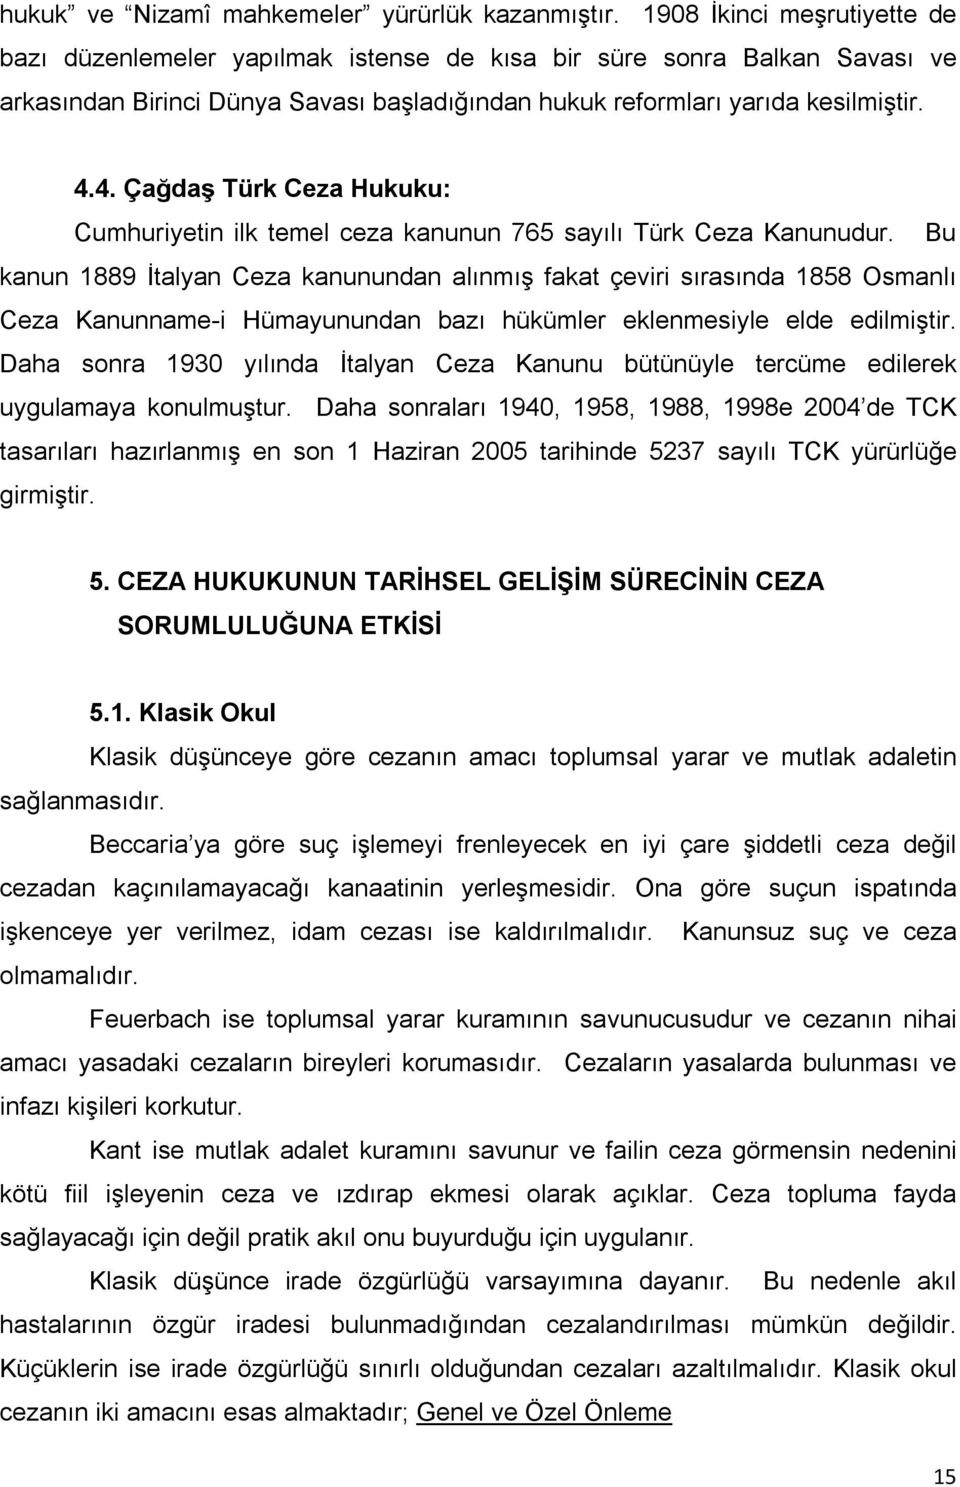 4. Çağdaş Türk Ceza Hukuku: Cumhuriyetin ilk temel ceza kanunun 765 sayılı Türk Ceza Kanunudur.